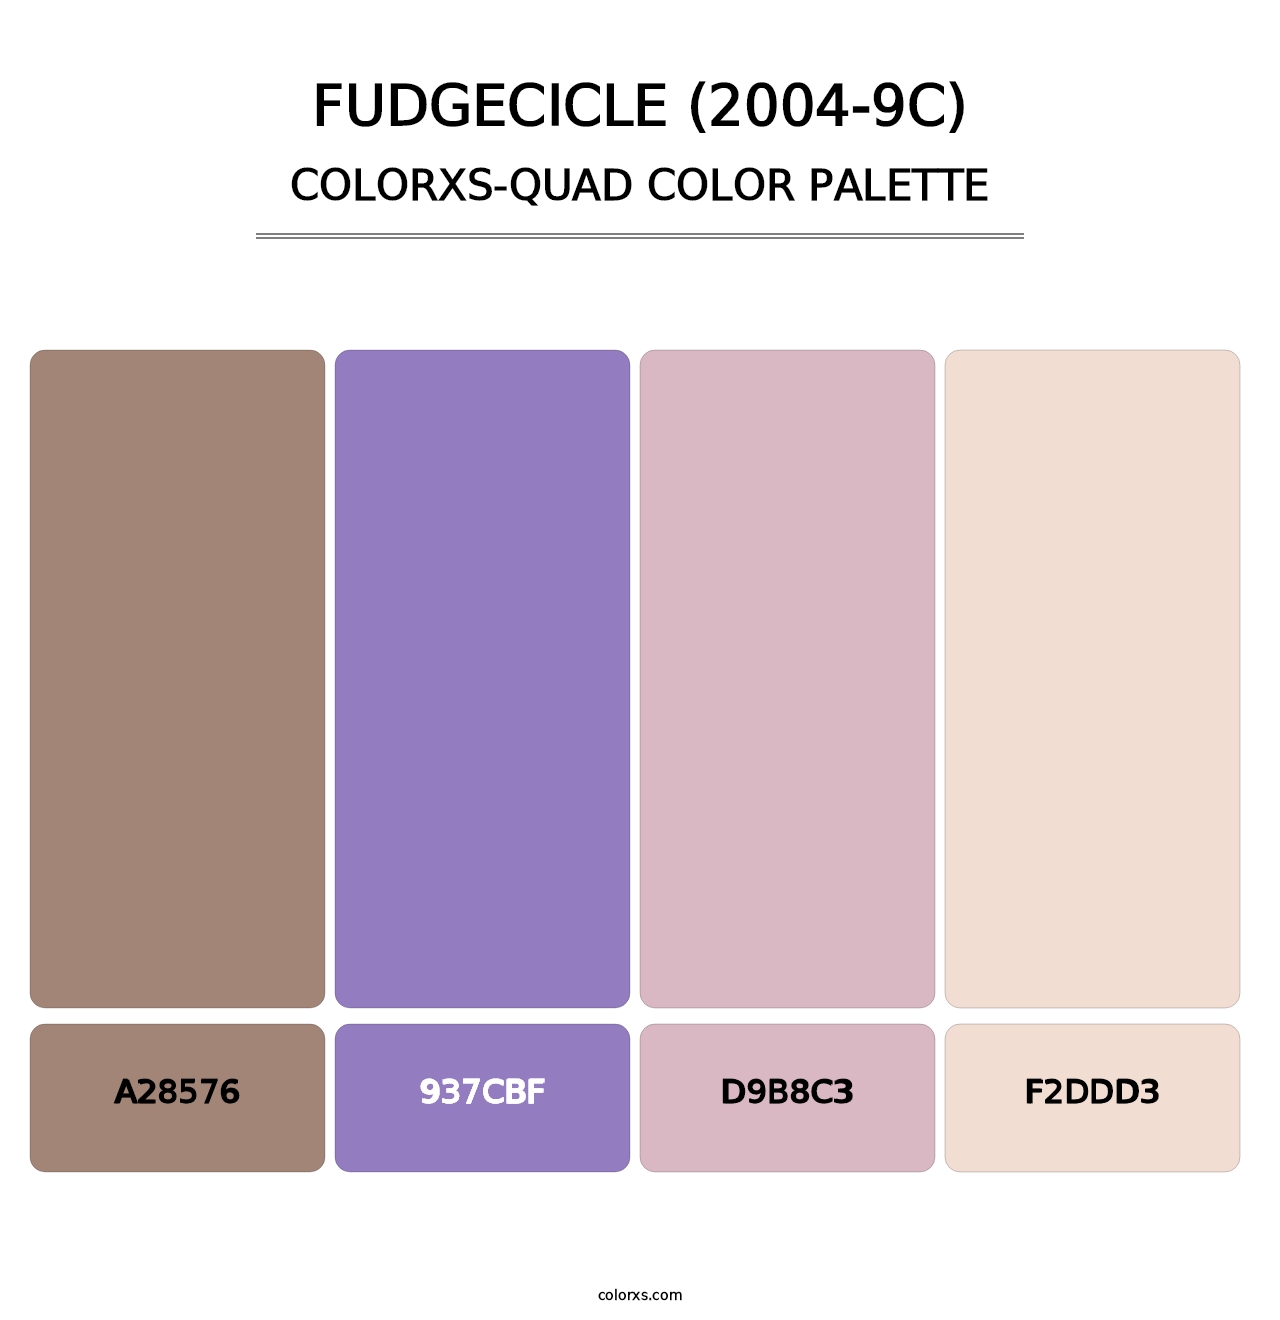 Fudgecicle (2004-9C) - Colorxs Quad Palette